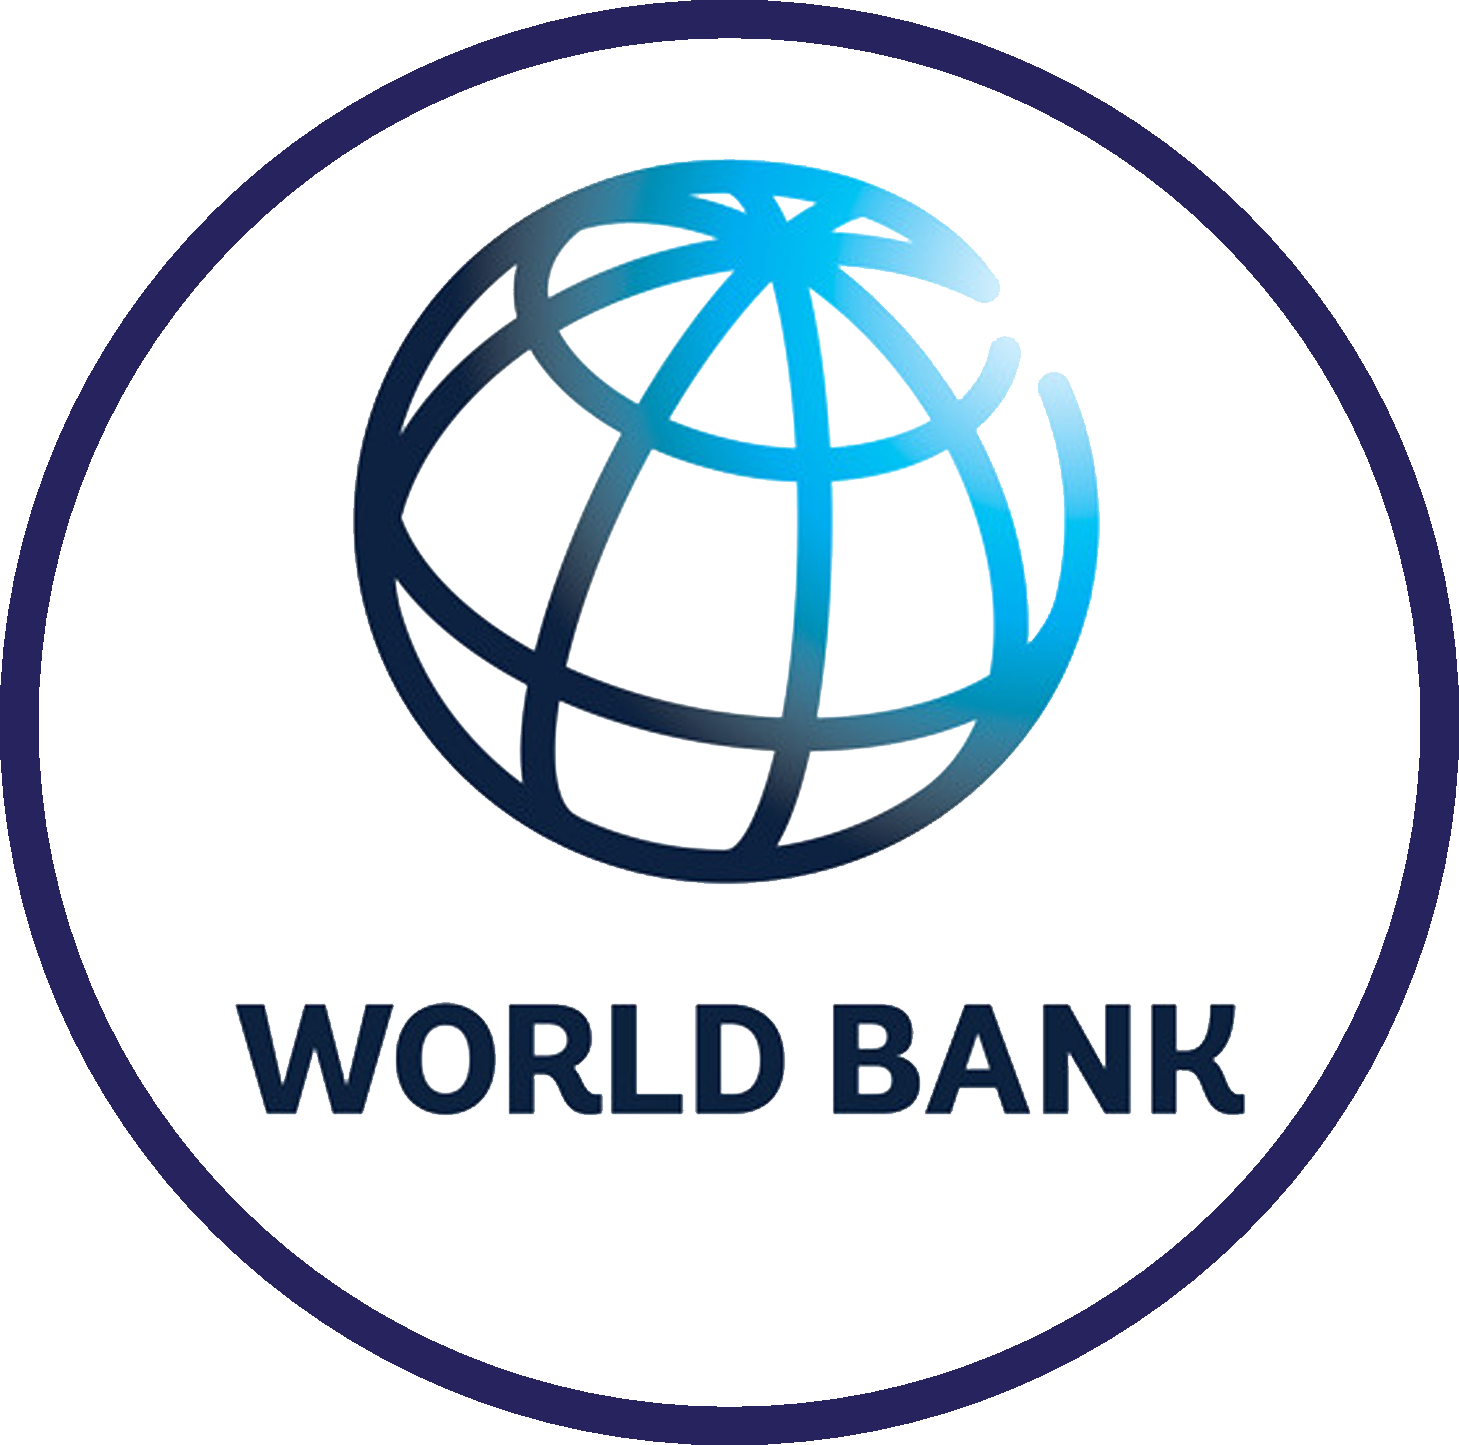 Всемирный банк развития. Всемирный банк. Значок Всемирного банка. Логотип World Bank Group. Логотипы Мировых банков.